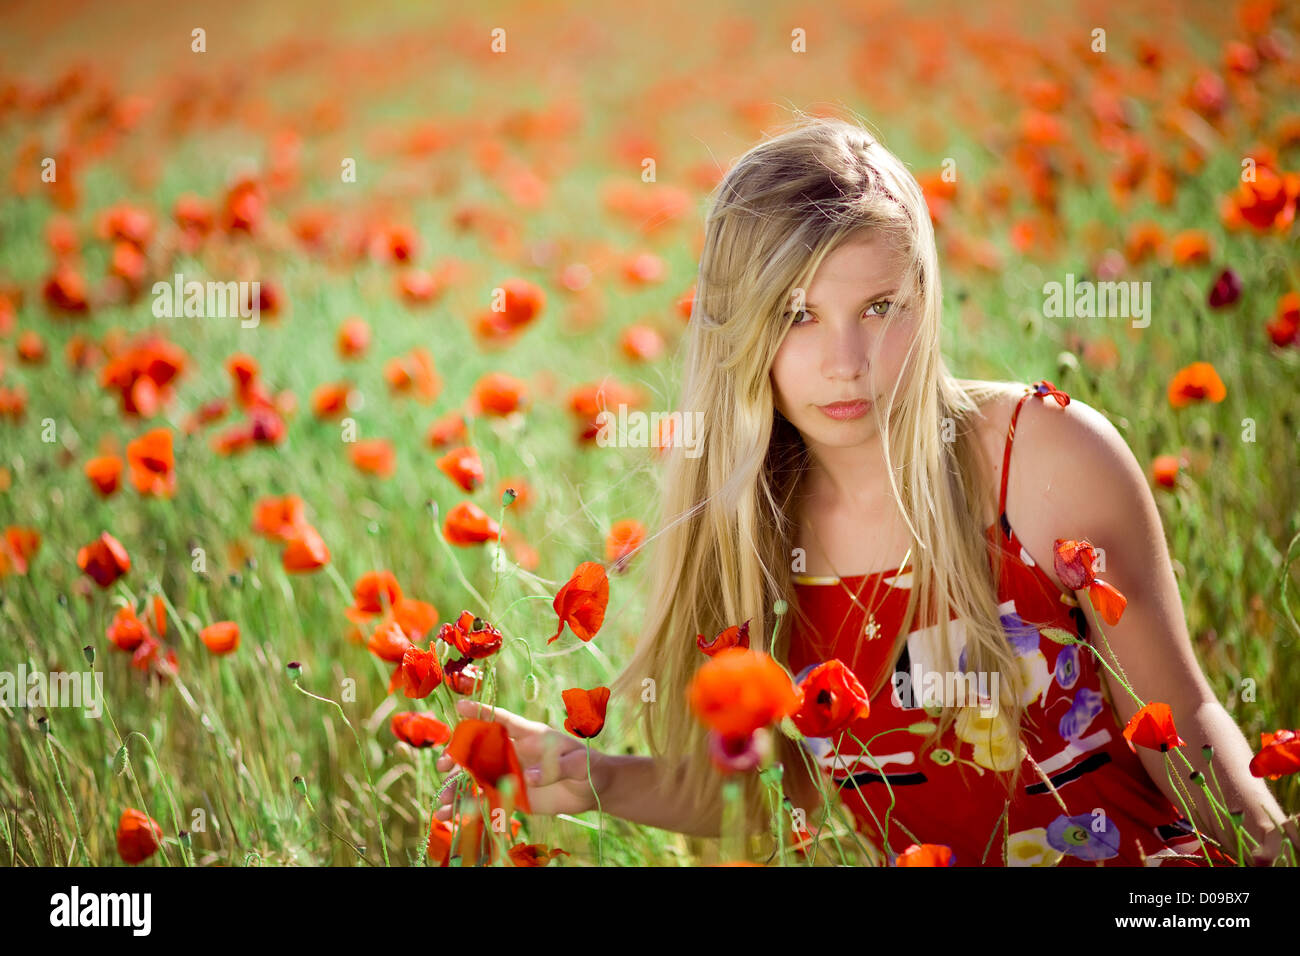 Girl in poppy field Stock Photo